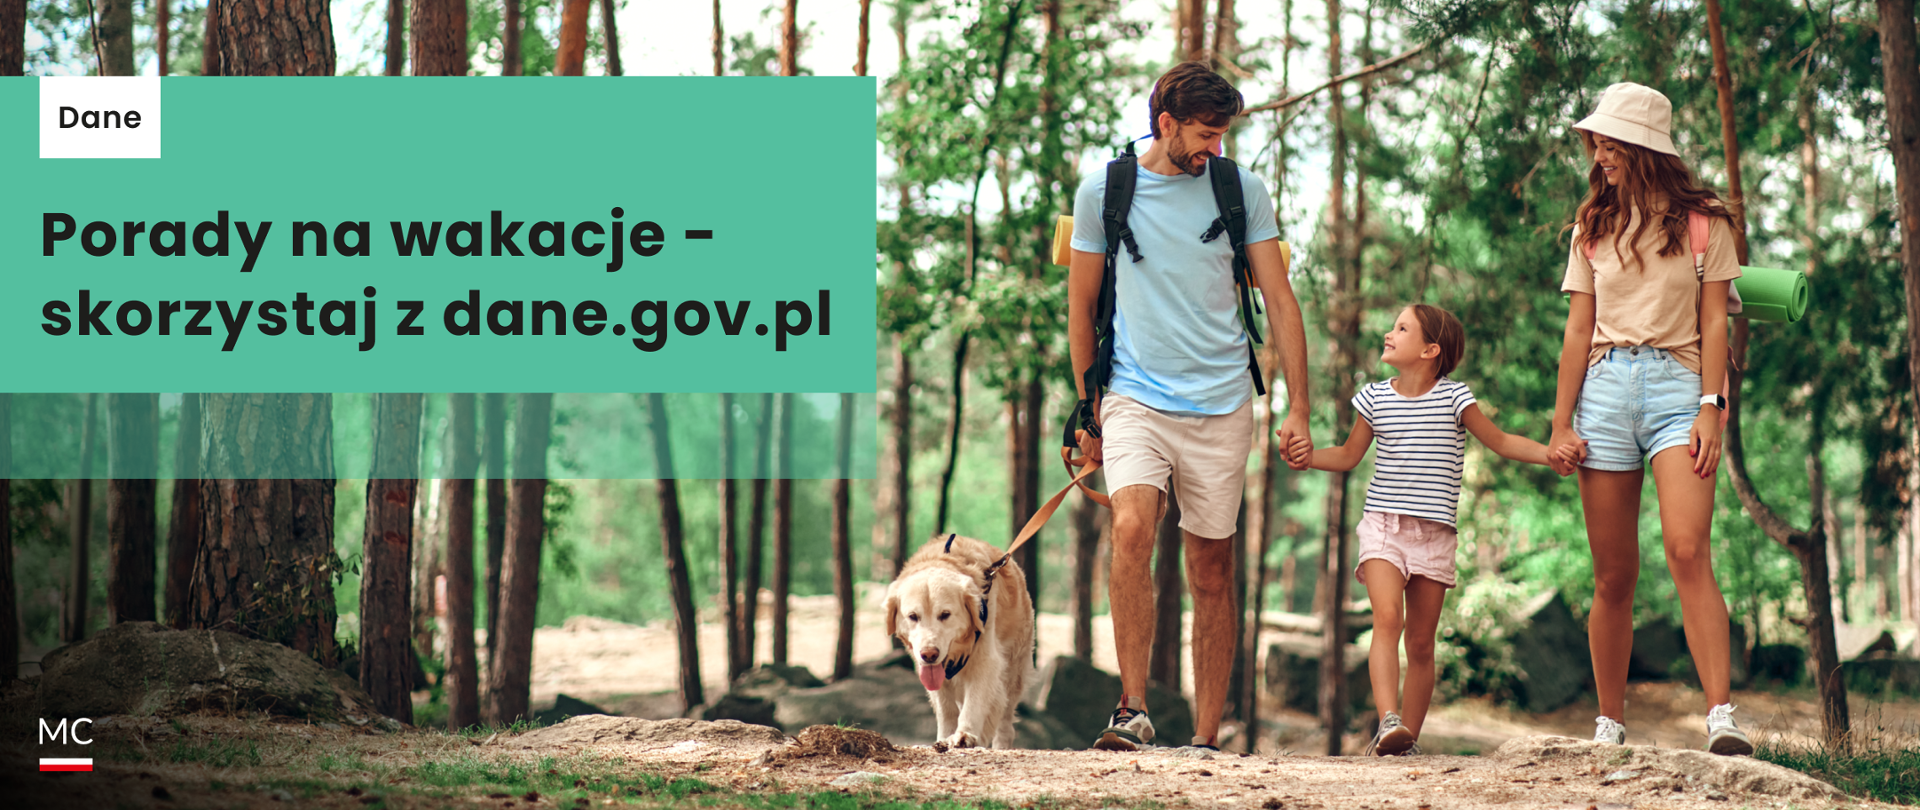 Porady na wakacje - skorzystaj z dane.gov.pl